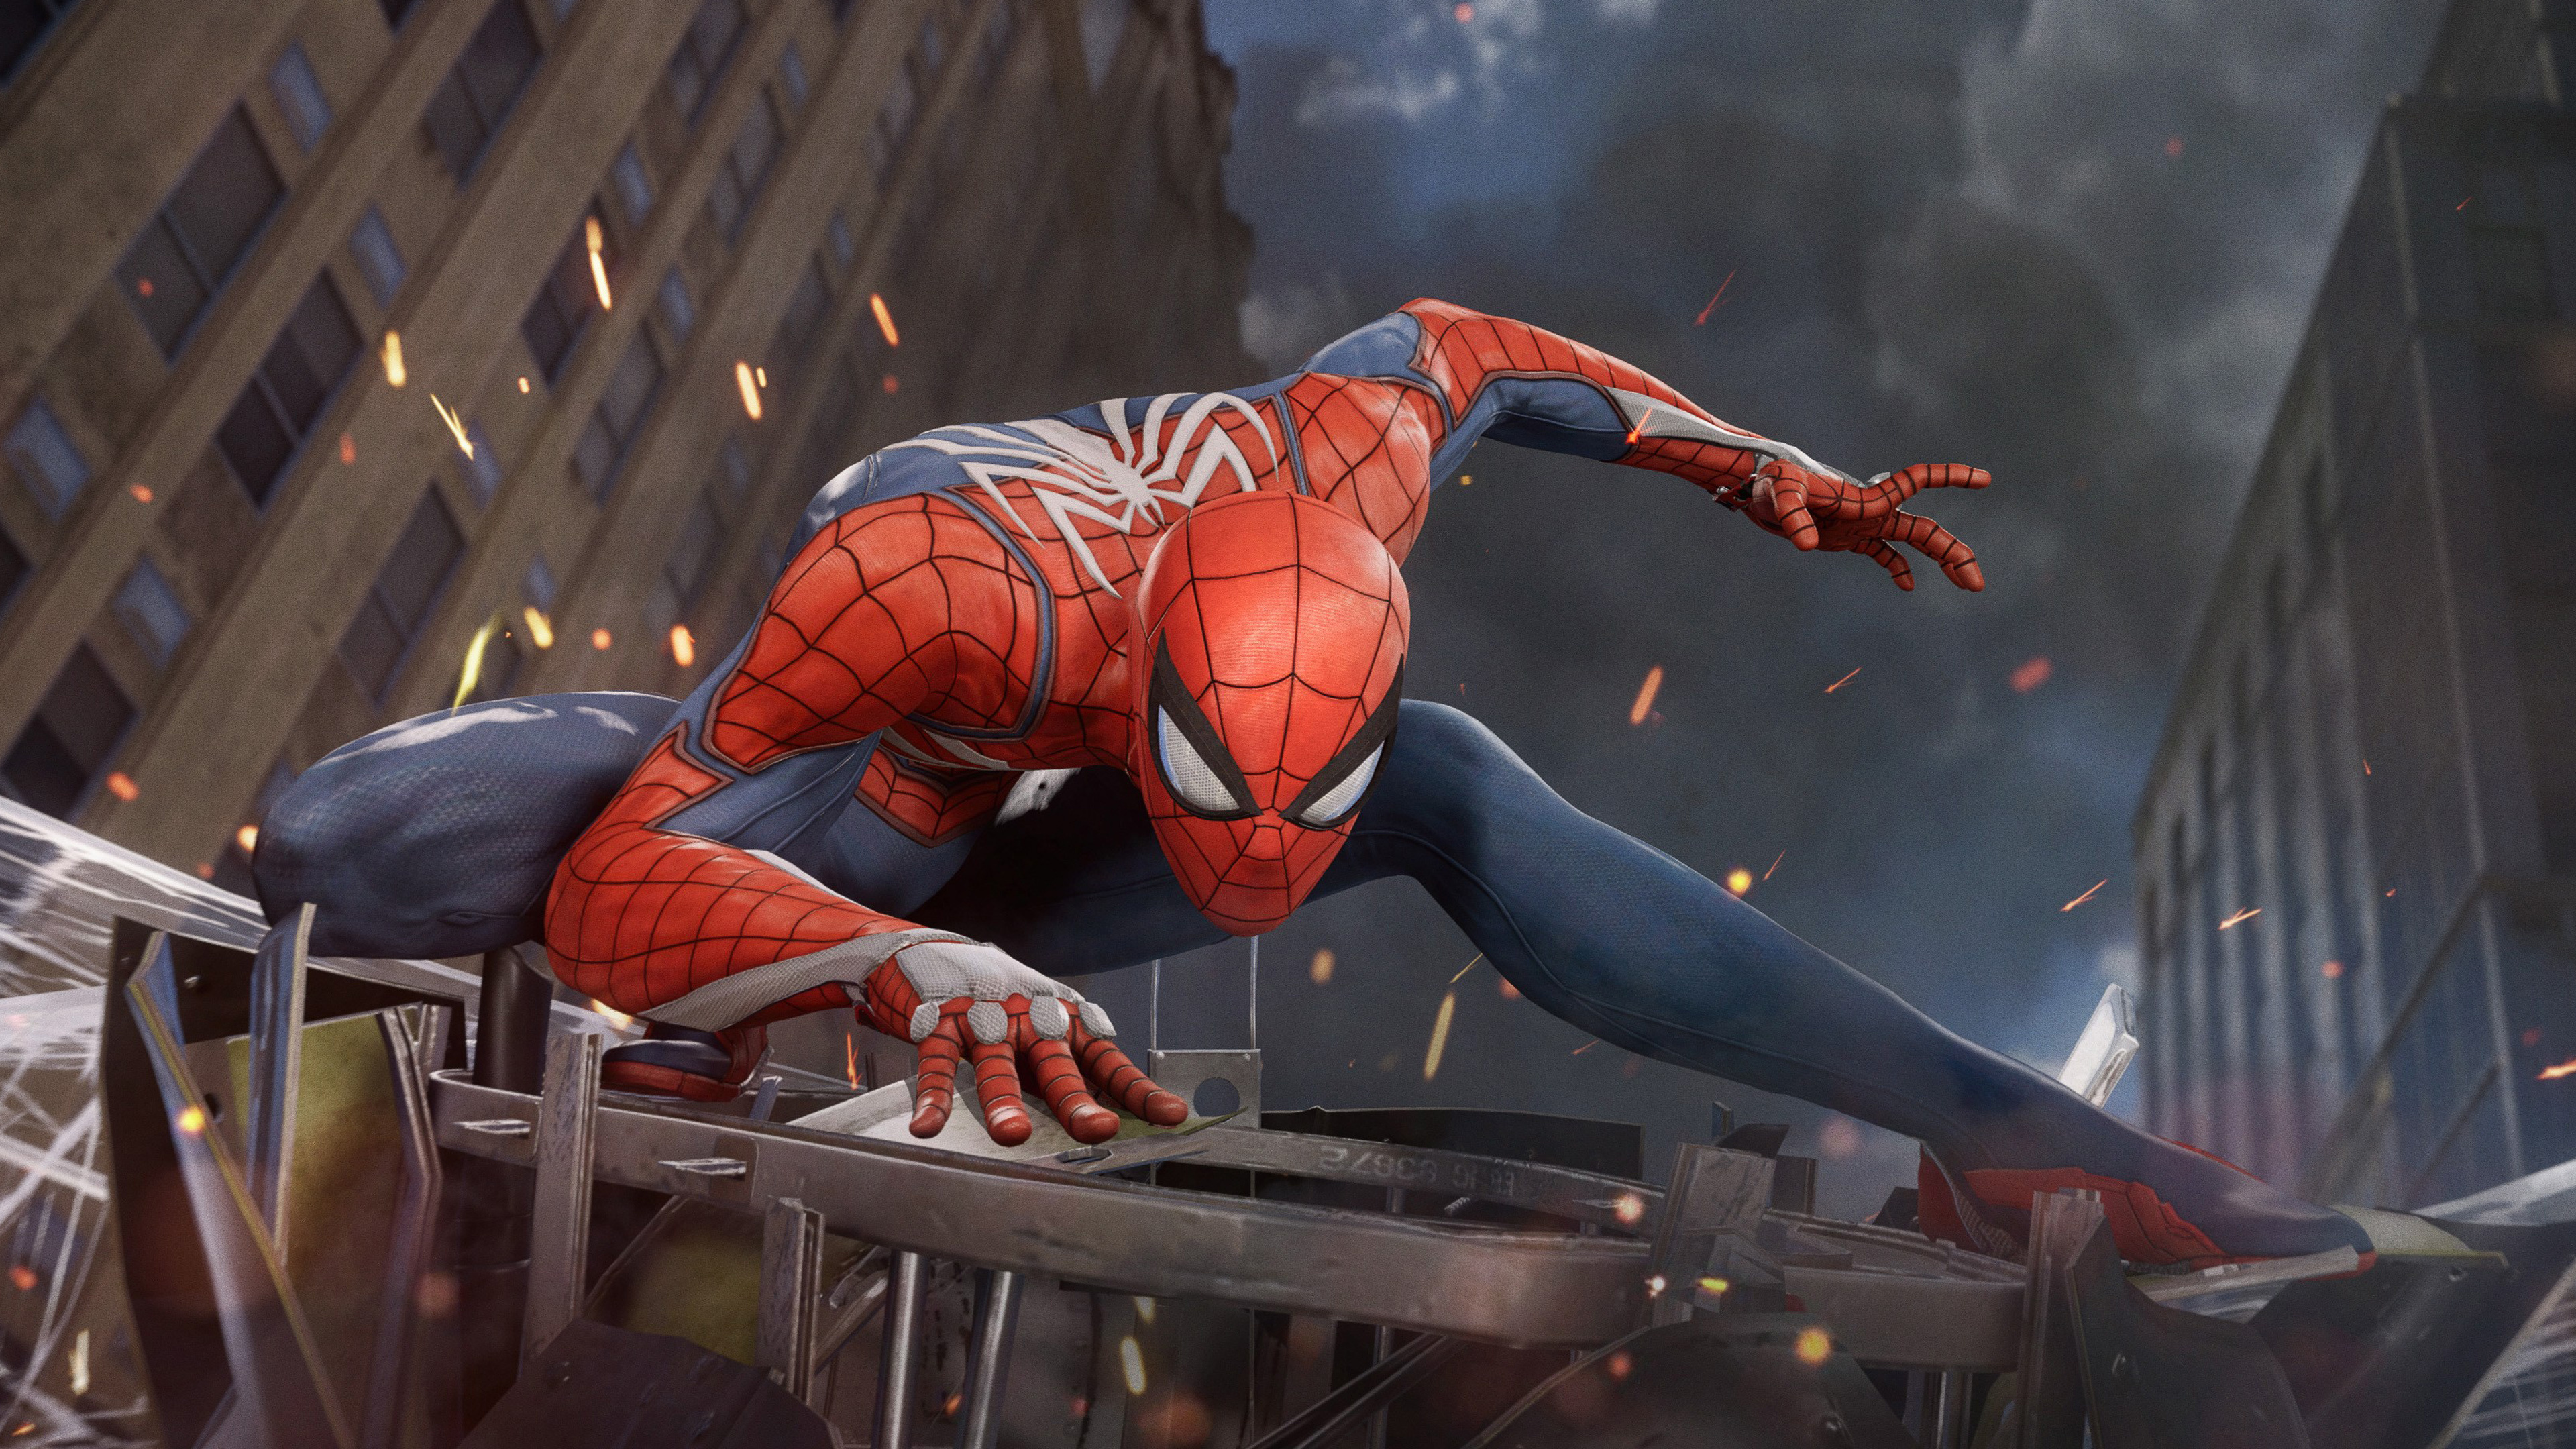 Spider-man, 患有失眠症的游戏, 超级英雄, 性能, 肉体 壁纸 3840x2160 允许